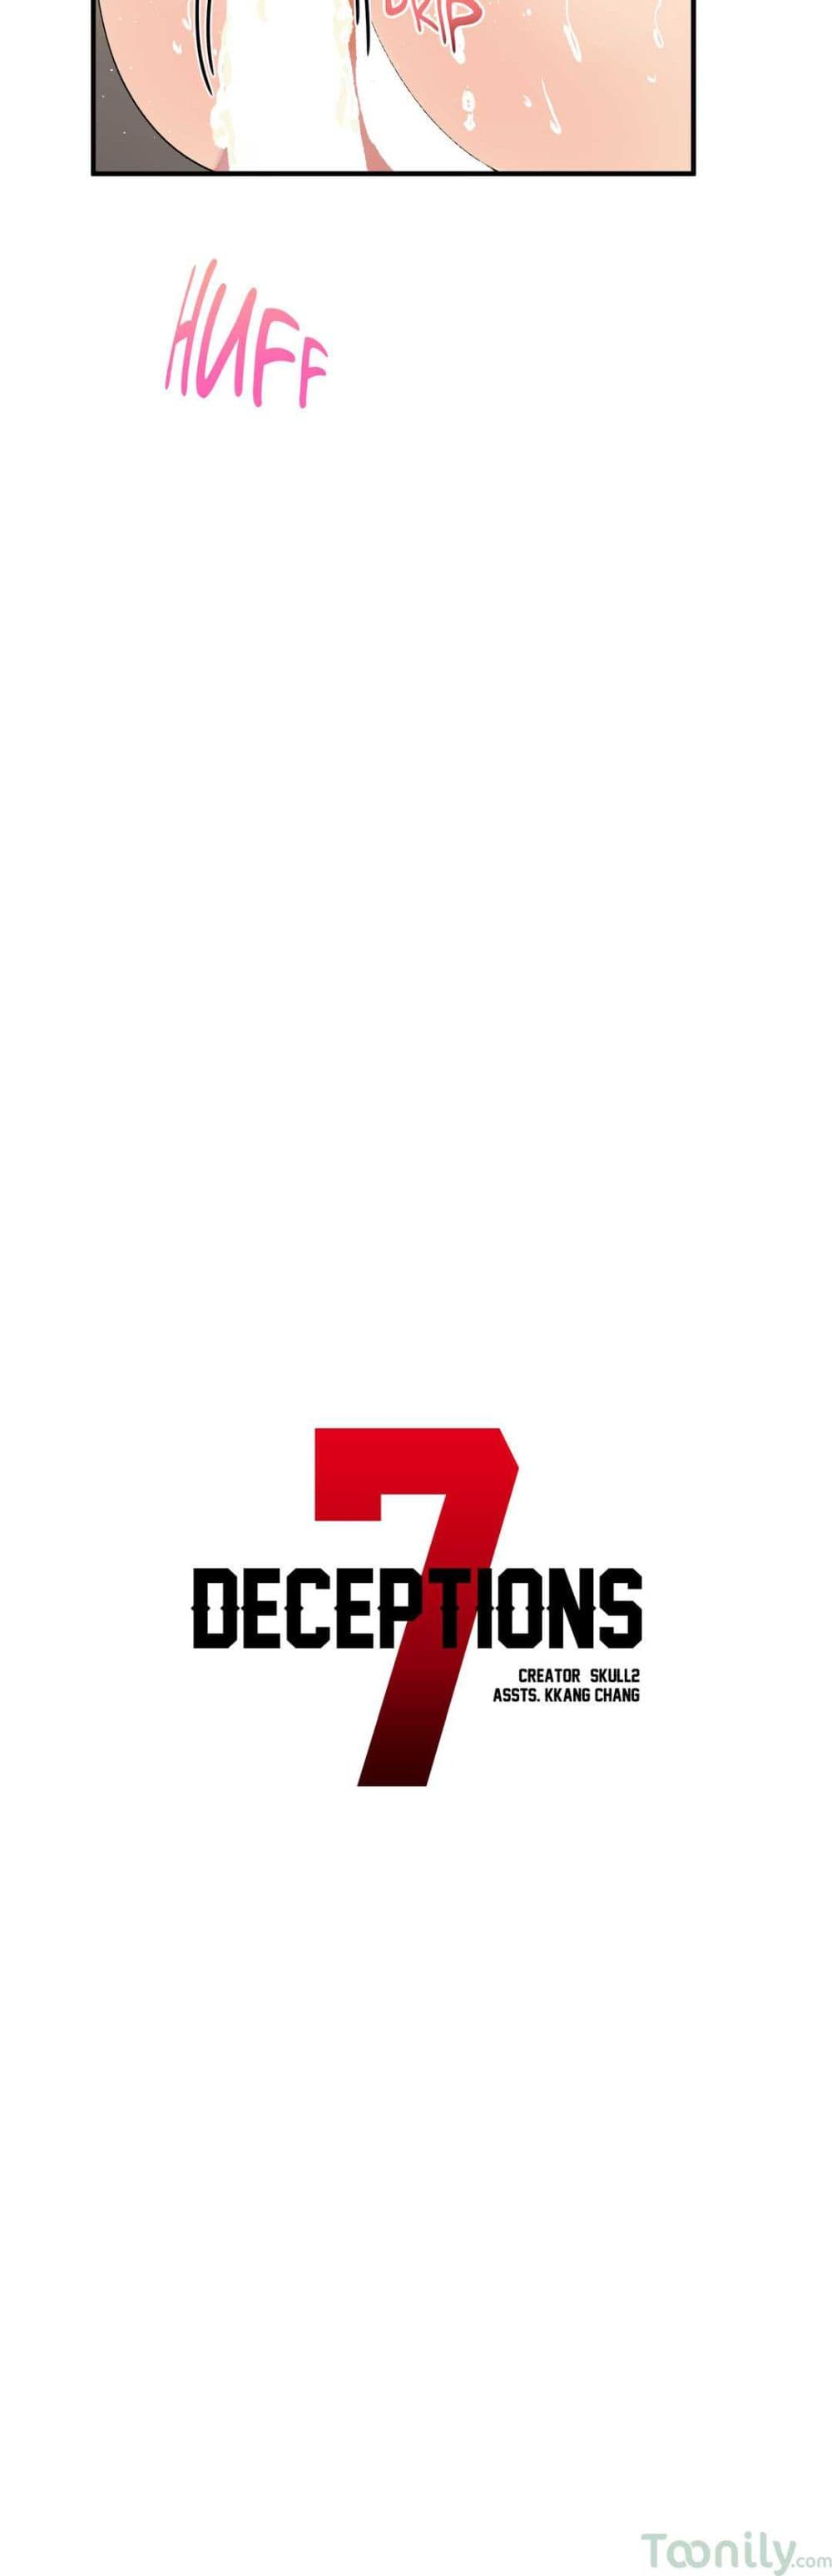 Deceptions 29 (12)